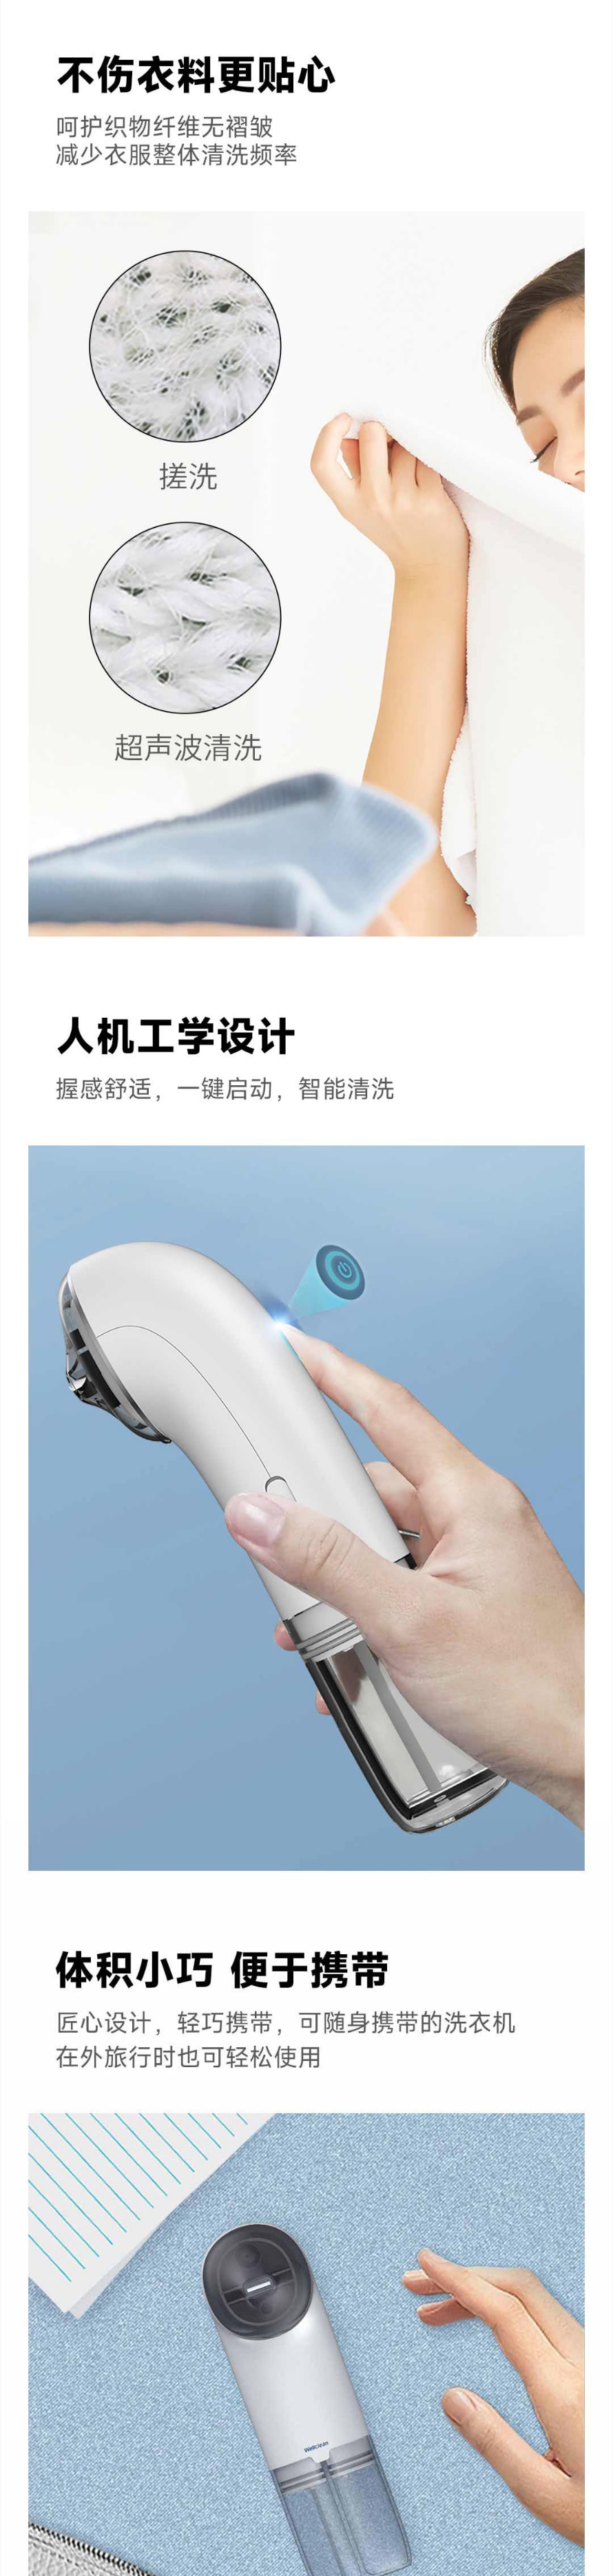 【中国直邮】小米有品 维可丽便携式超声波清洁仪 手持超声波洗衣机 快速清洁局部污渍 白色